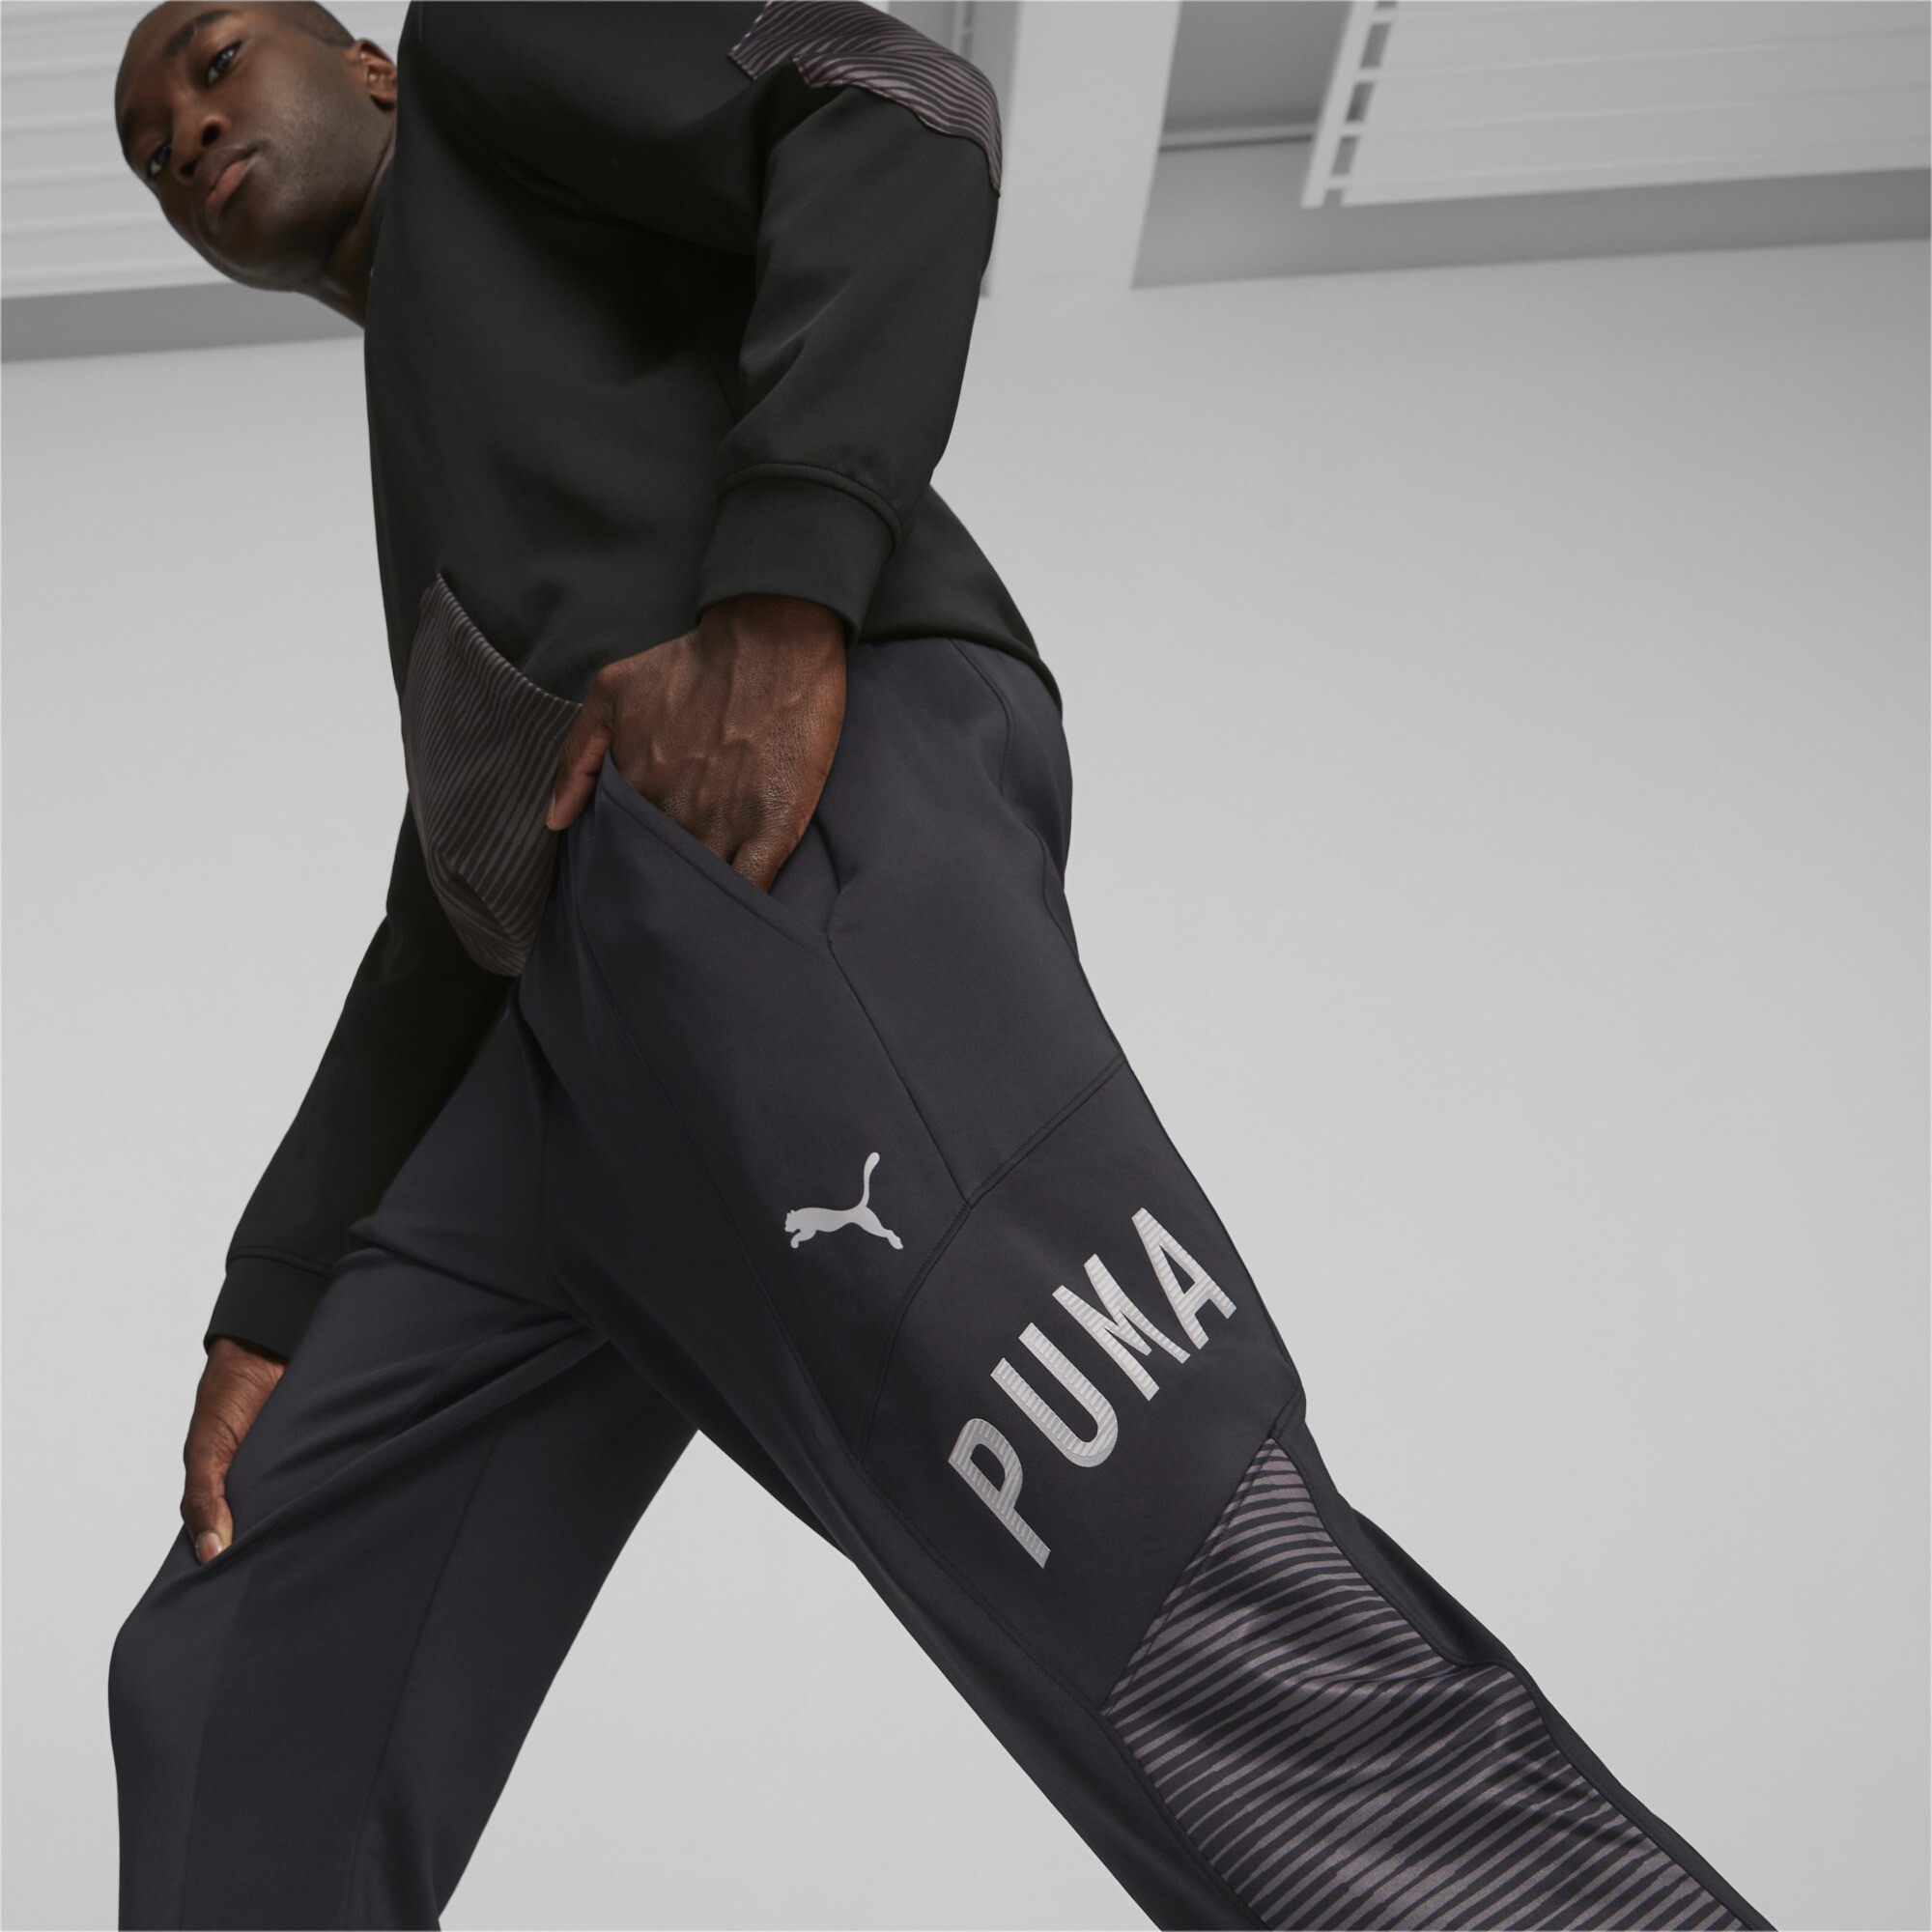 Men's PUMA Concept Hyperwave Training Joggers Men In Black, Size Medium